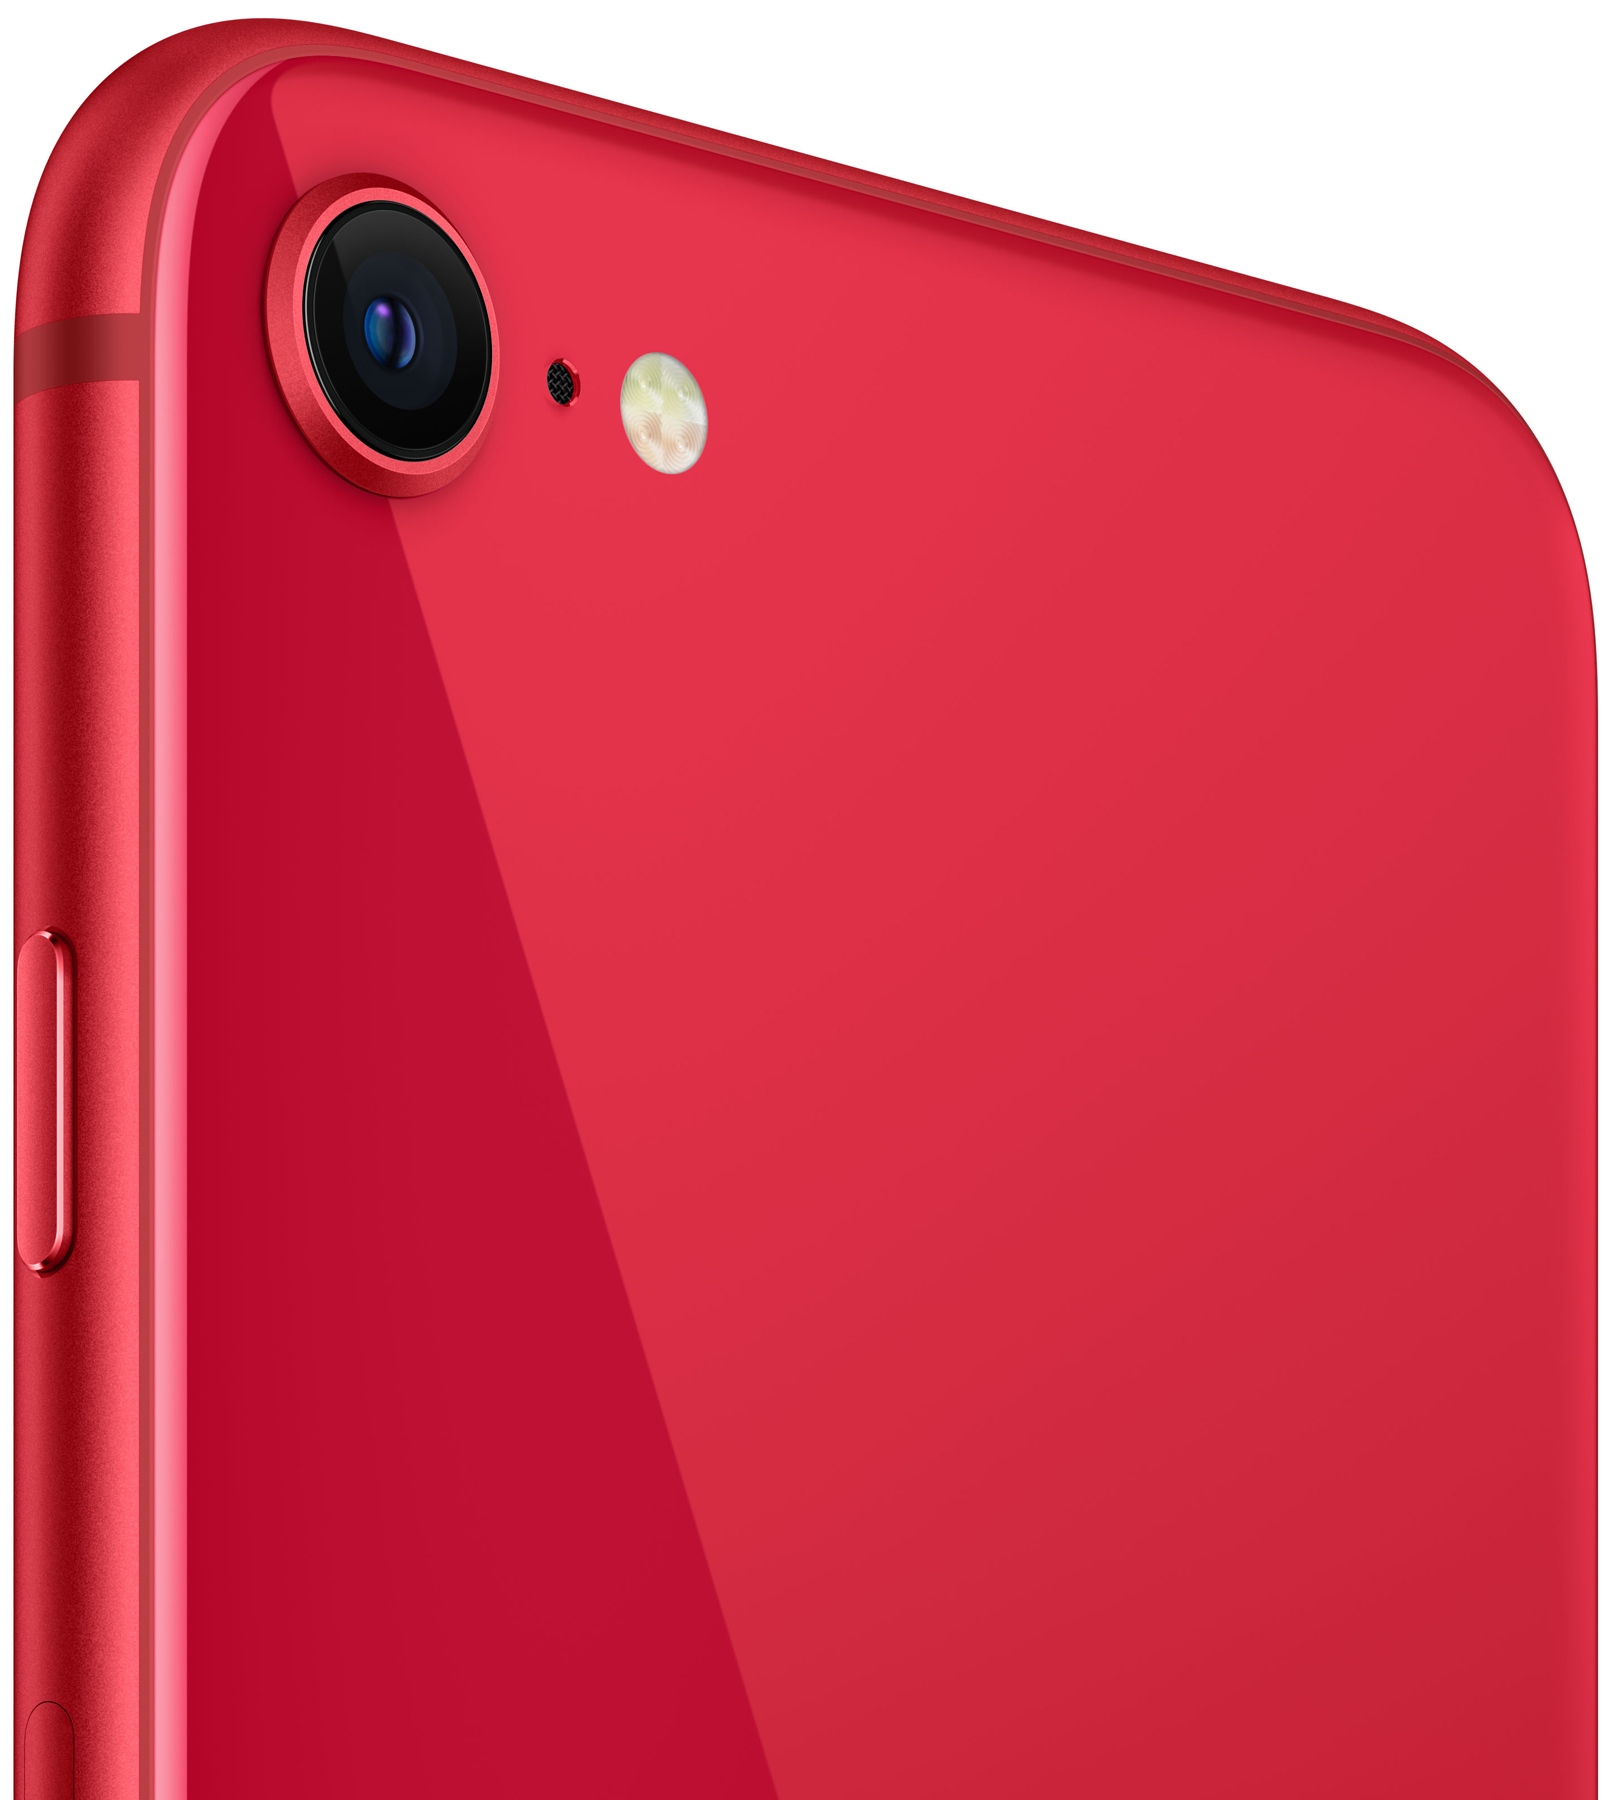 Смартфон Apple iPhone SE 64Gb Red 2020 (MHGR3) - зображення 5